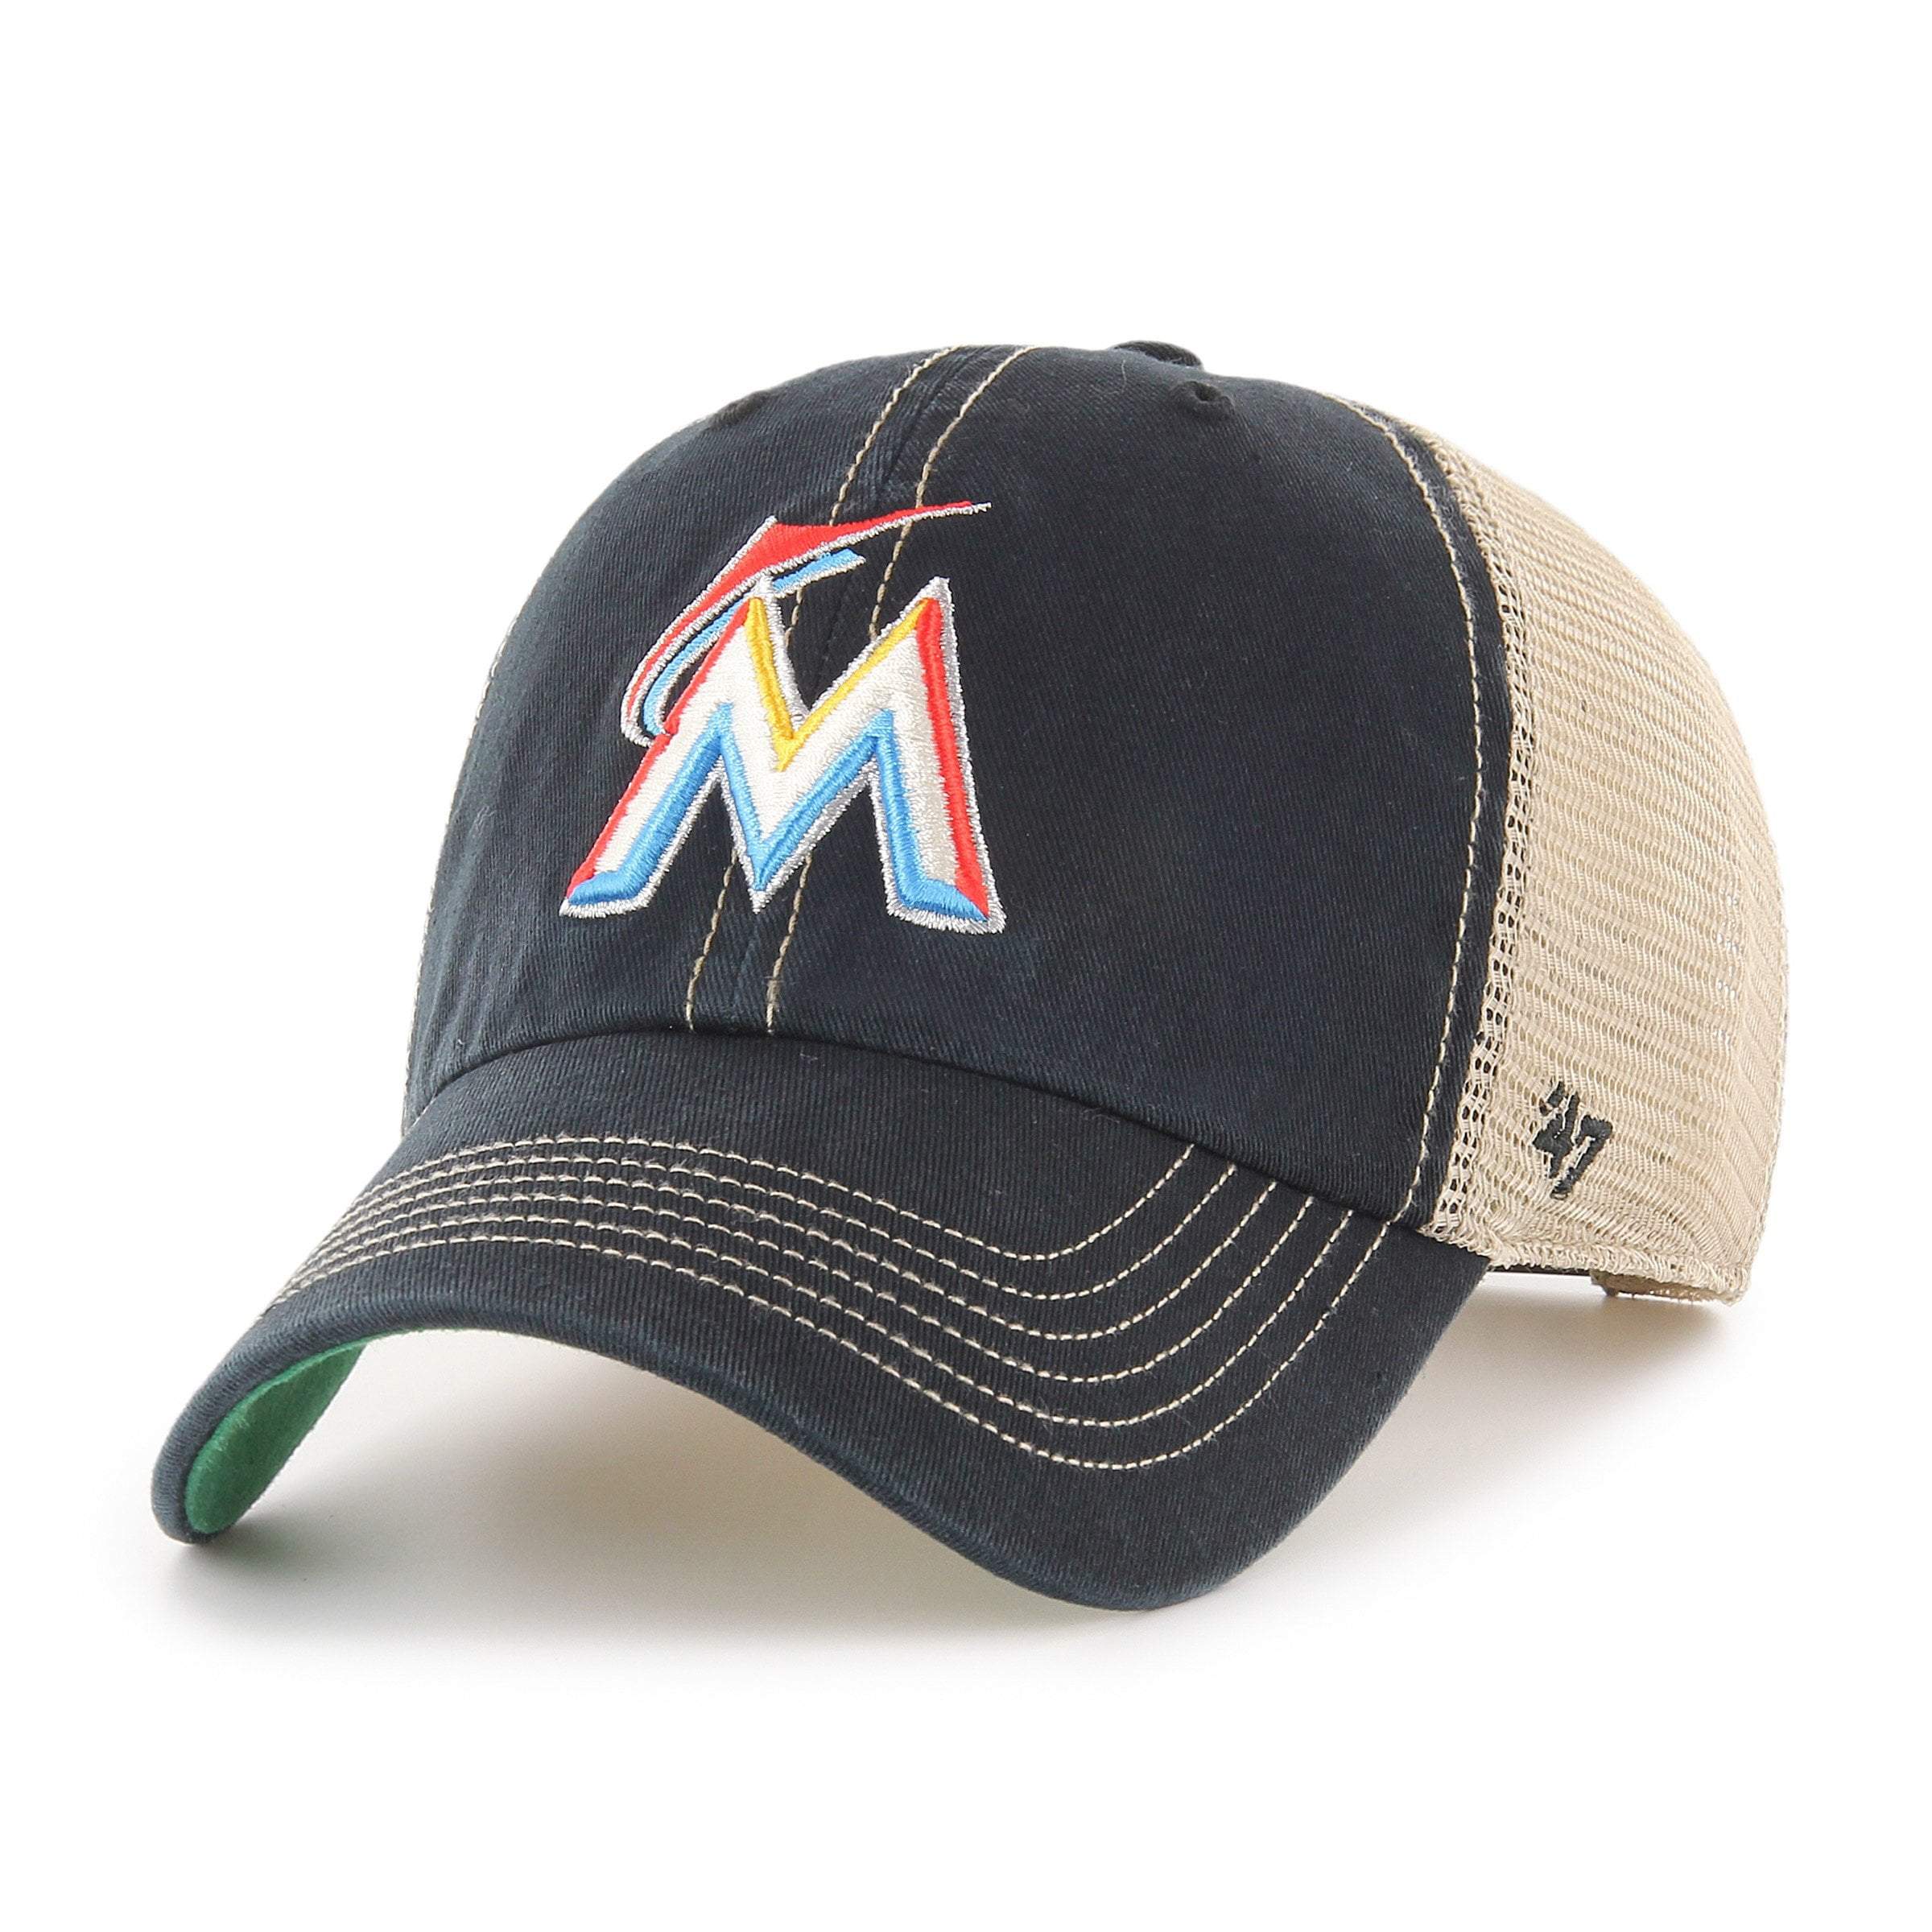 Miami Marlins Hats in Miami Marlins Team Shop 